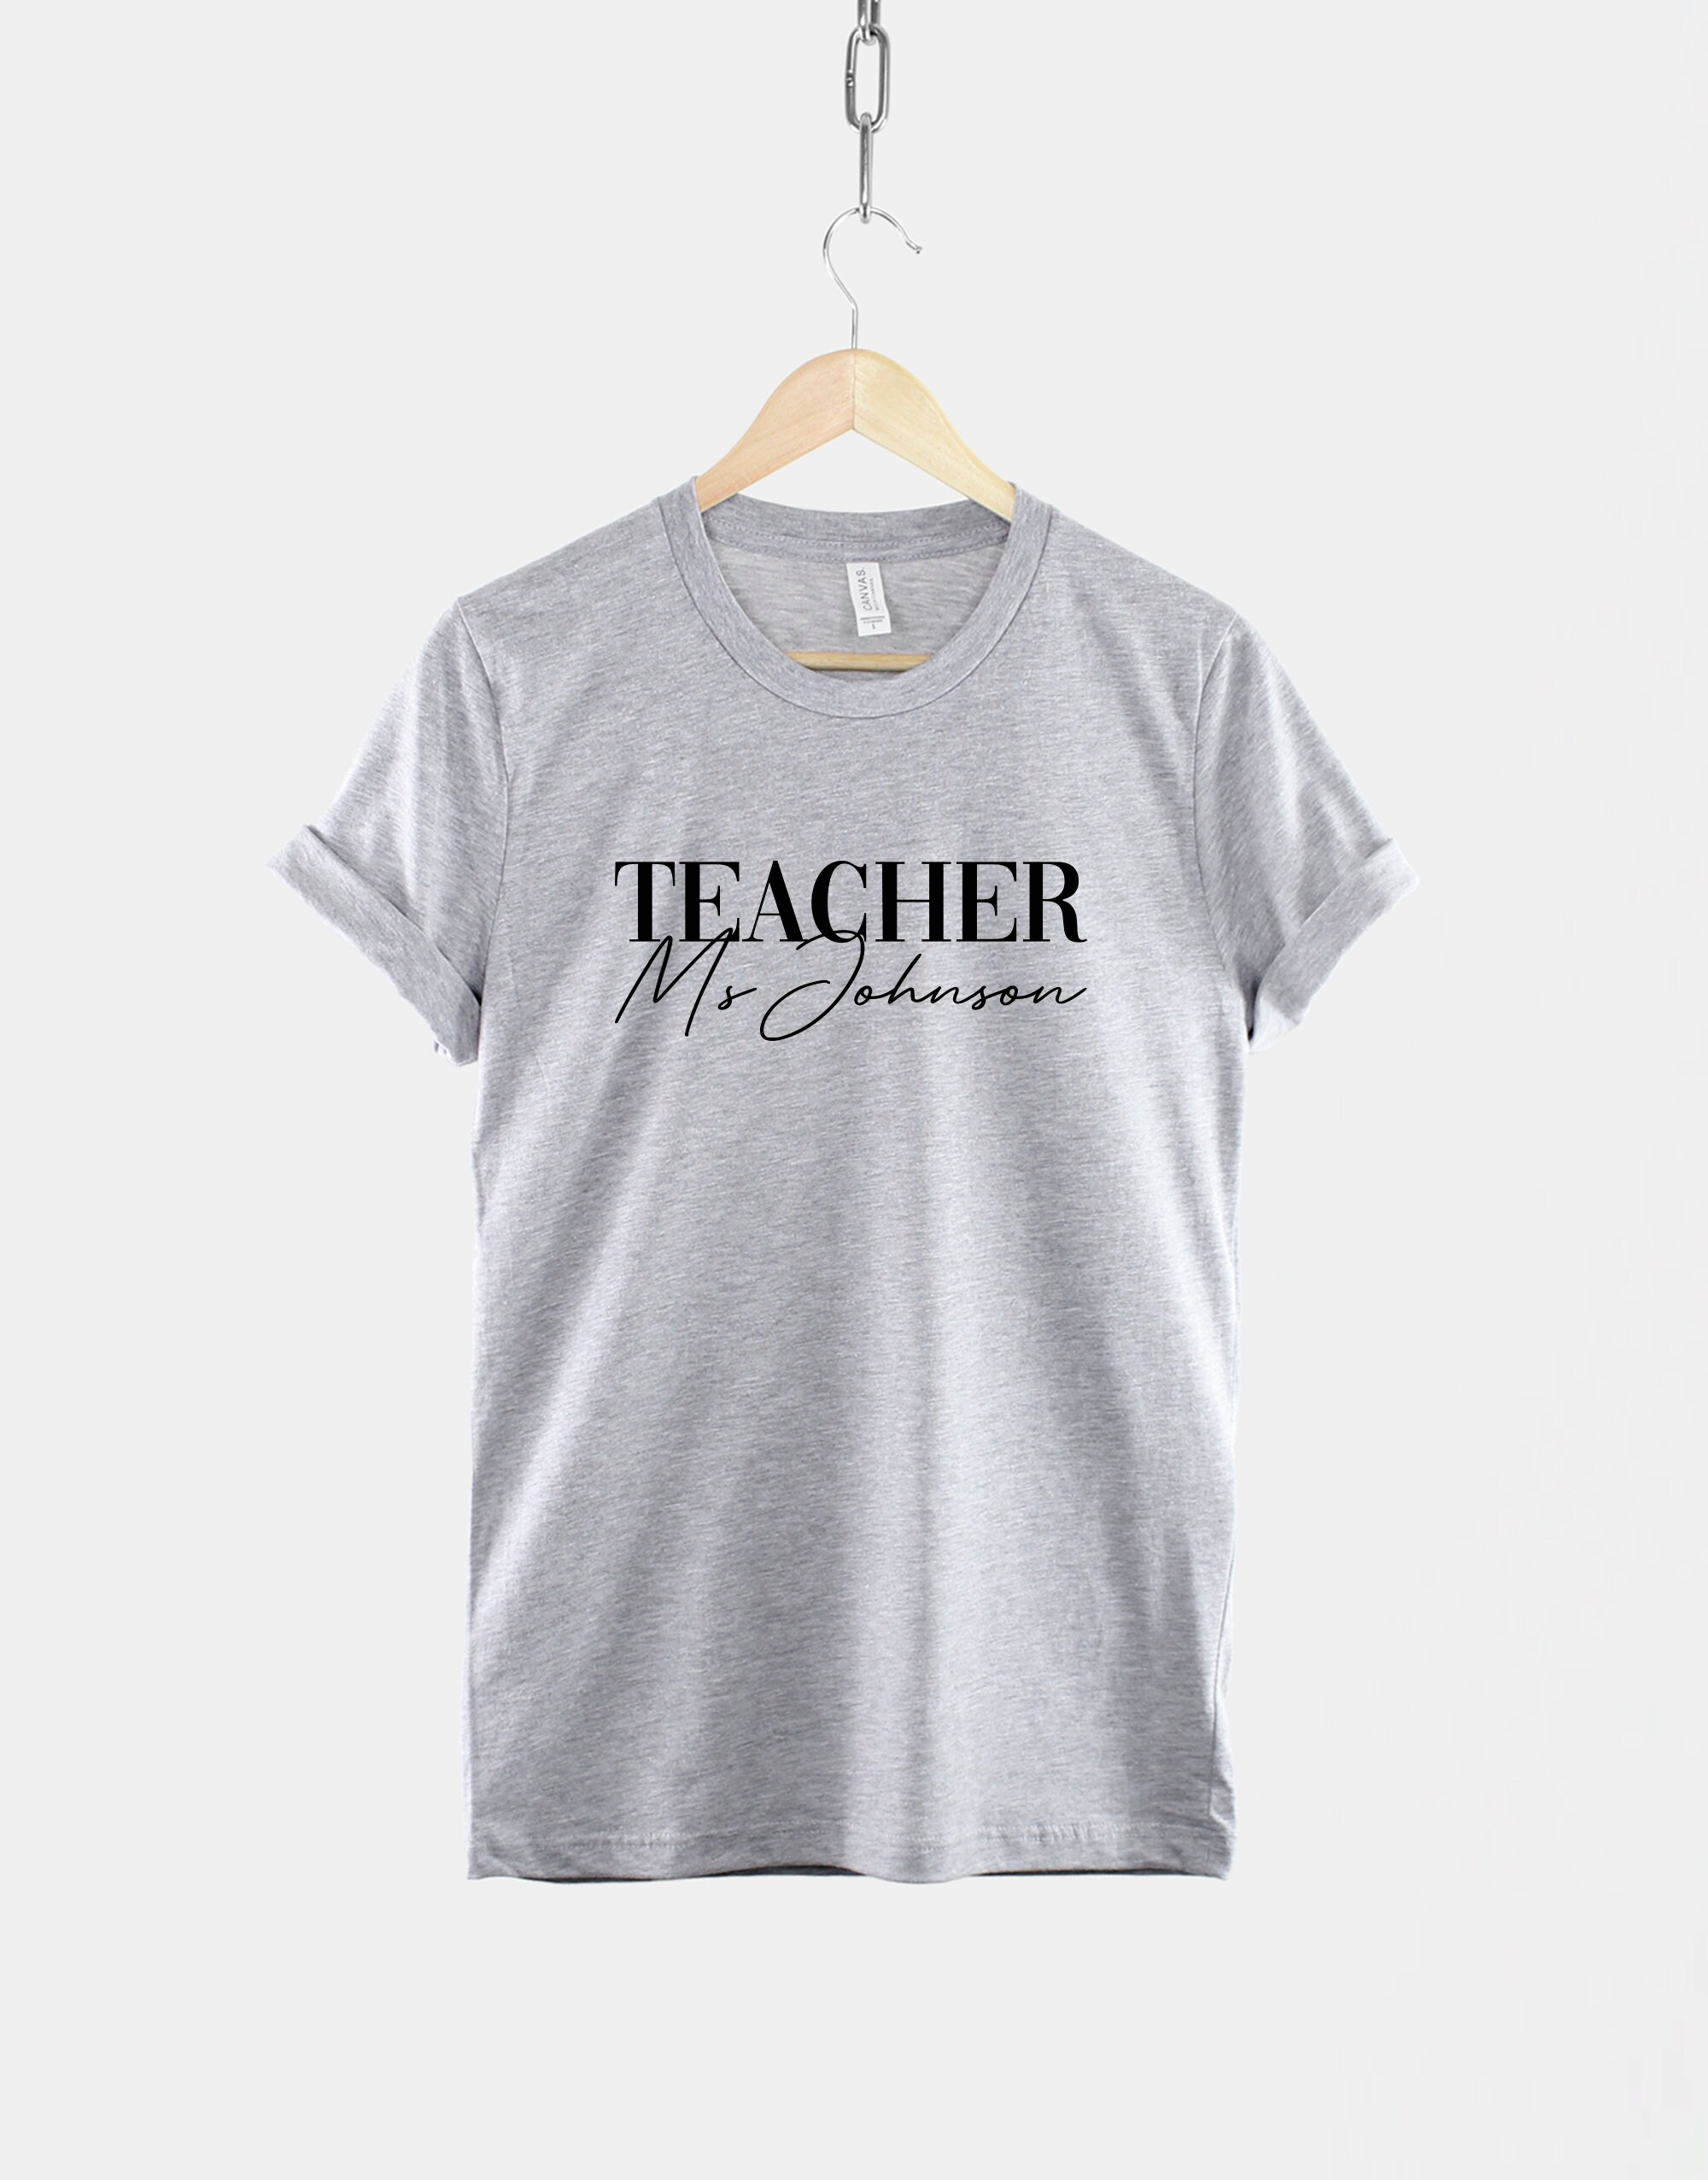 Customized Teacher T-Shirt - Custom School Teacher Shirt